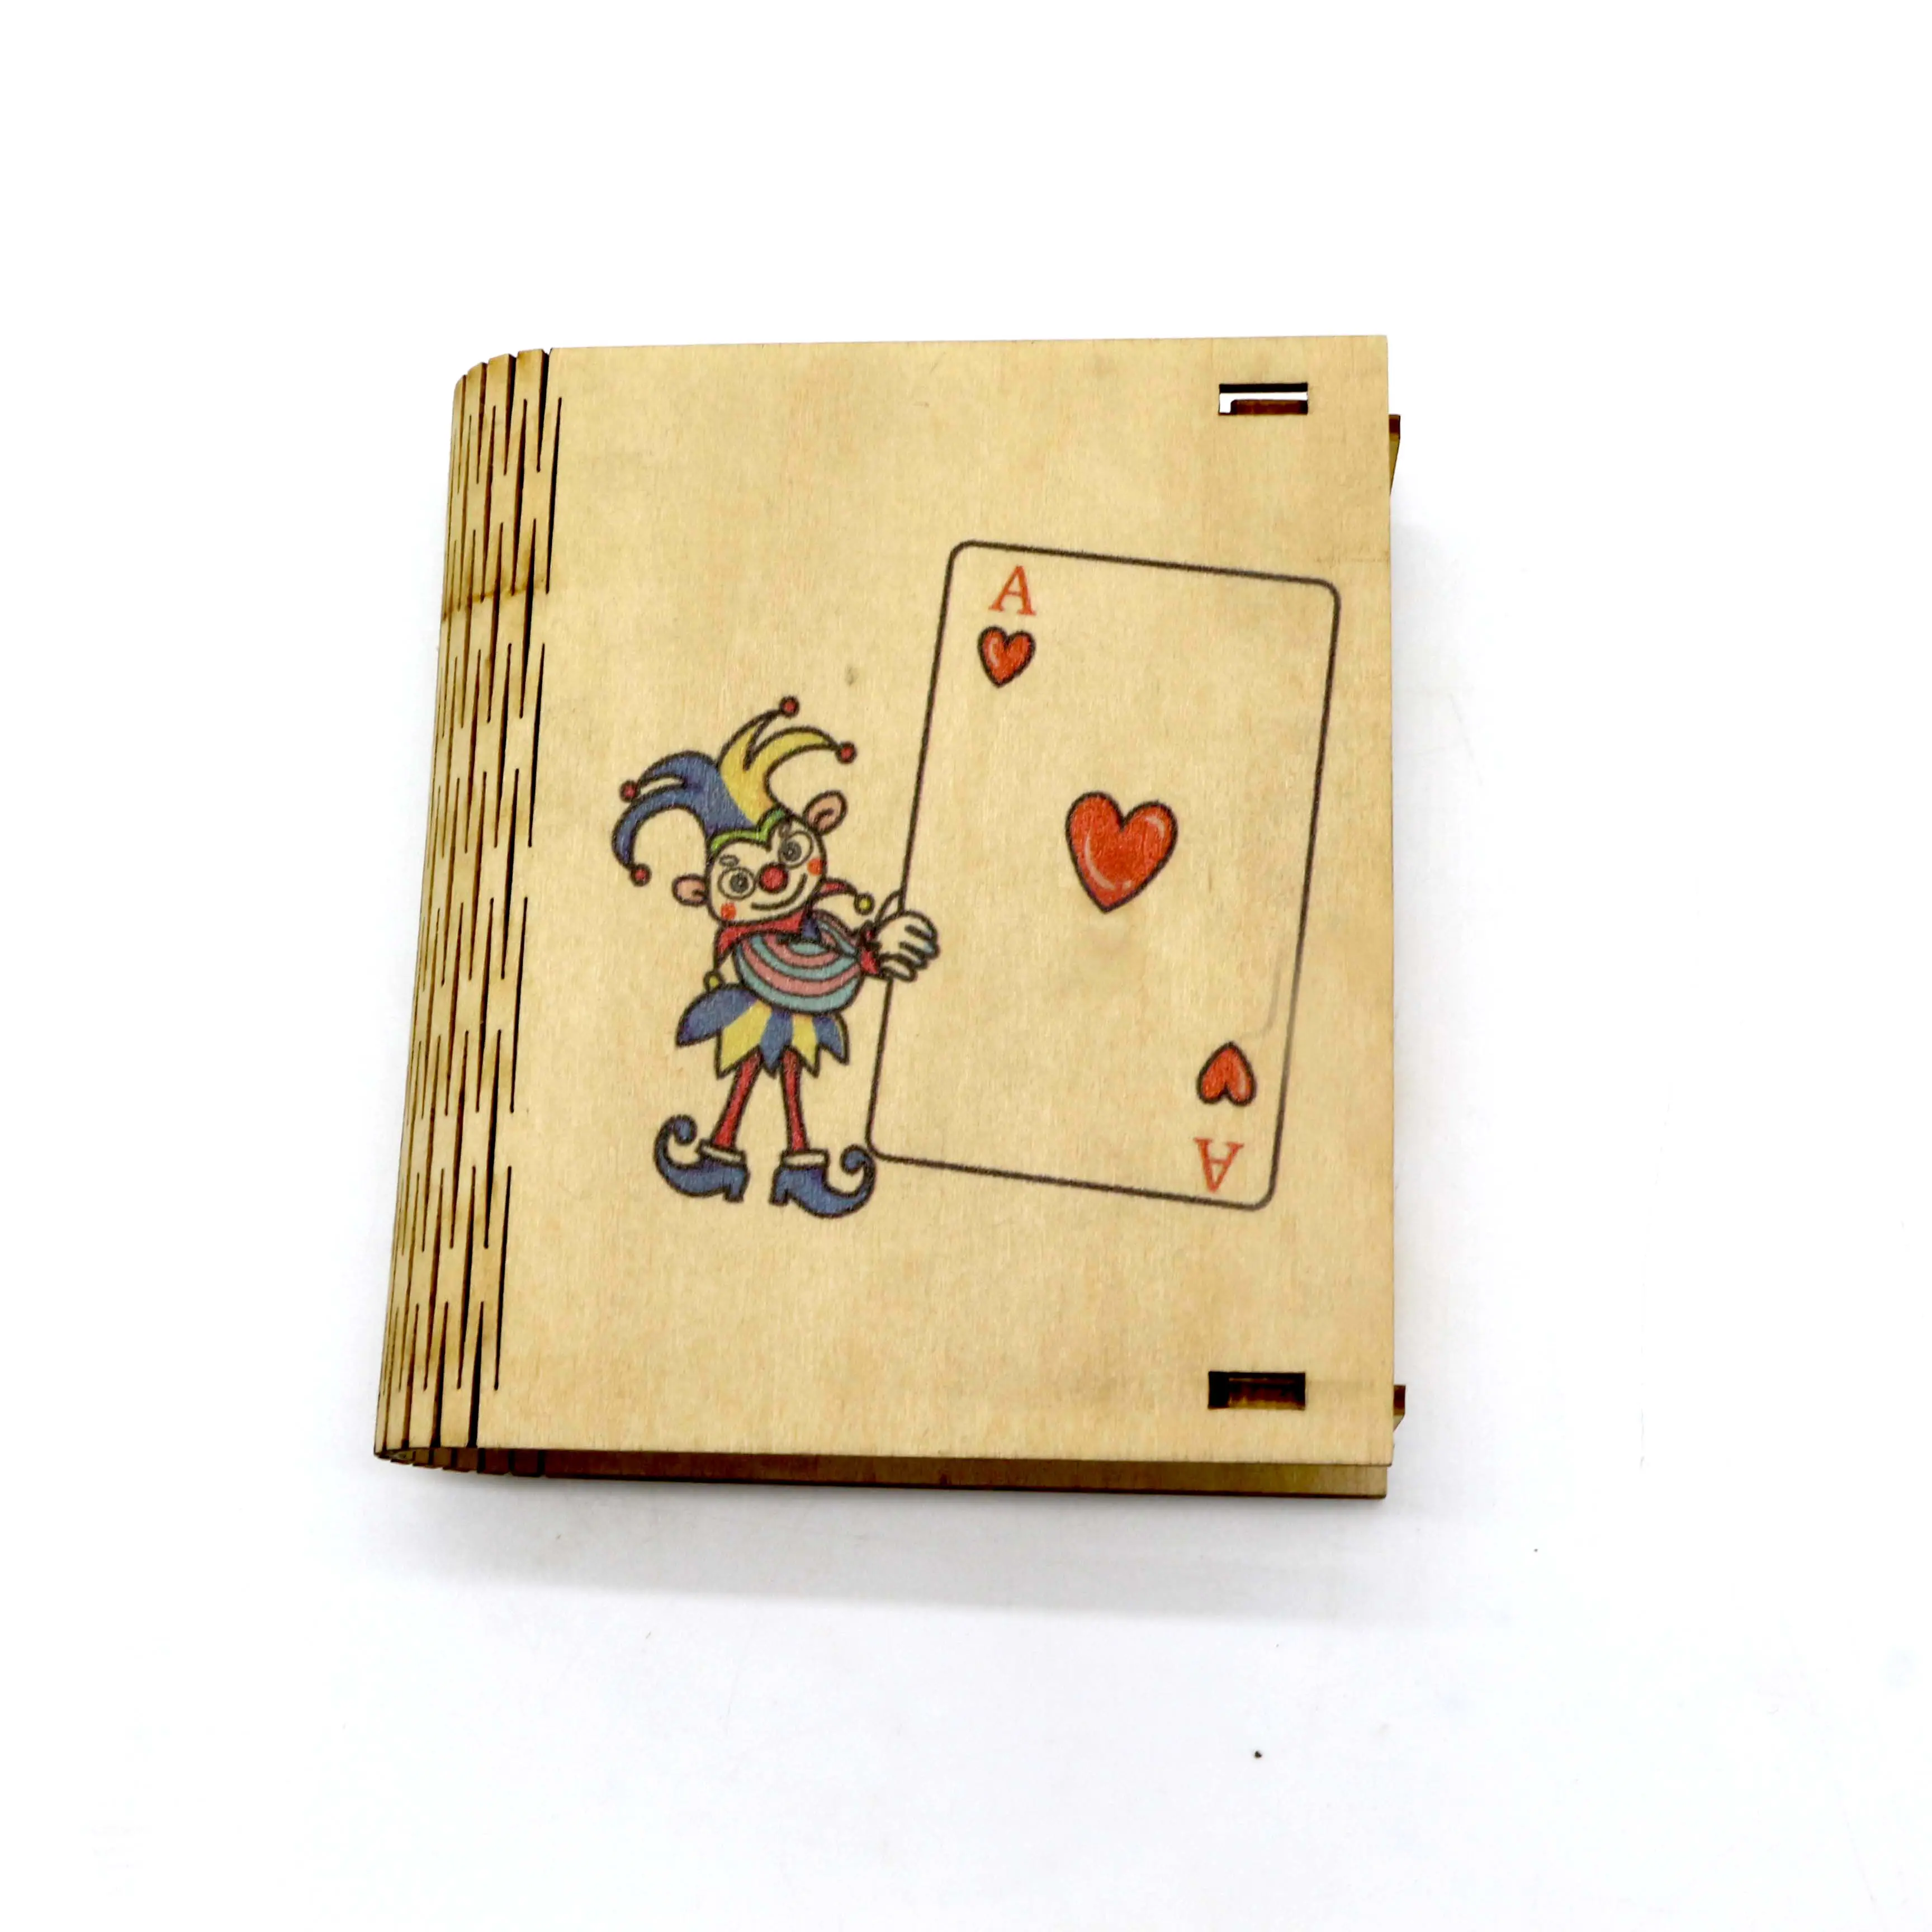 Soporte creativo de madera para cartas de juego, caja de almacenamiento, organizador, estuche de madera para cartas de juego